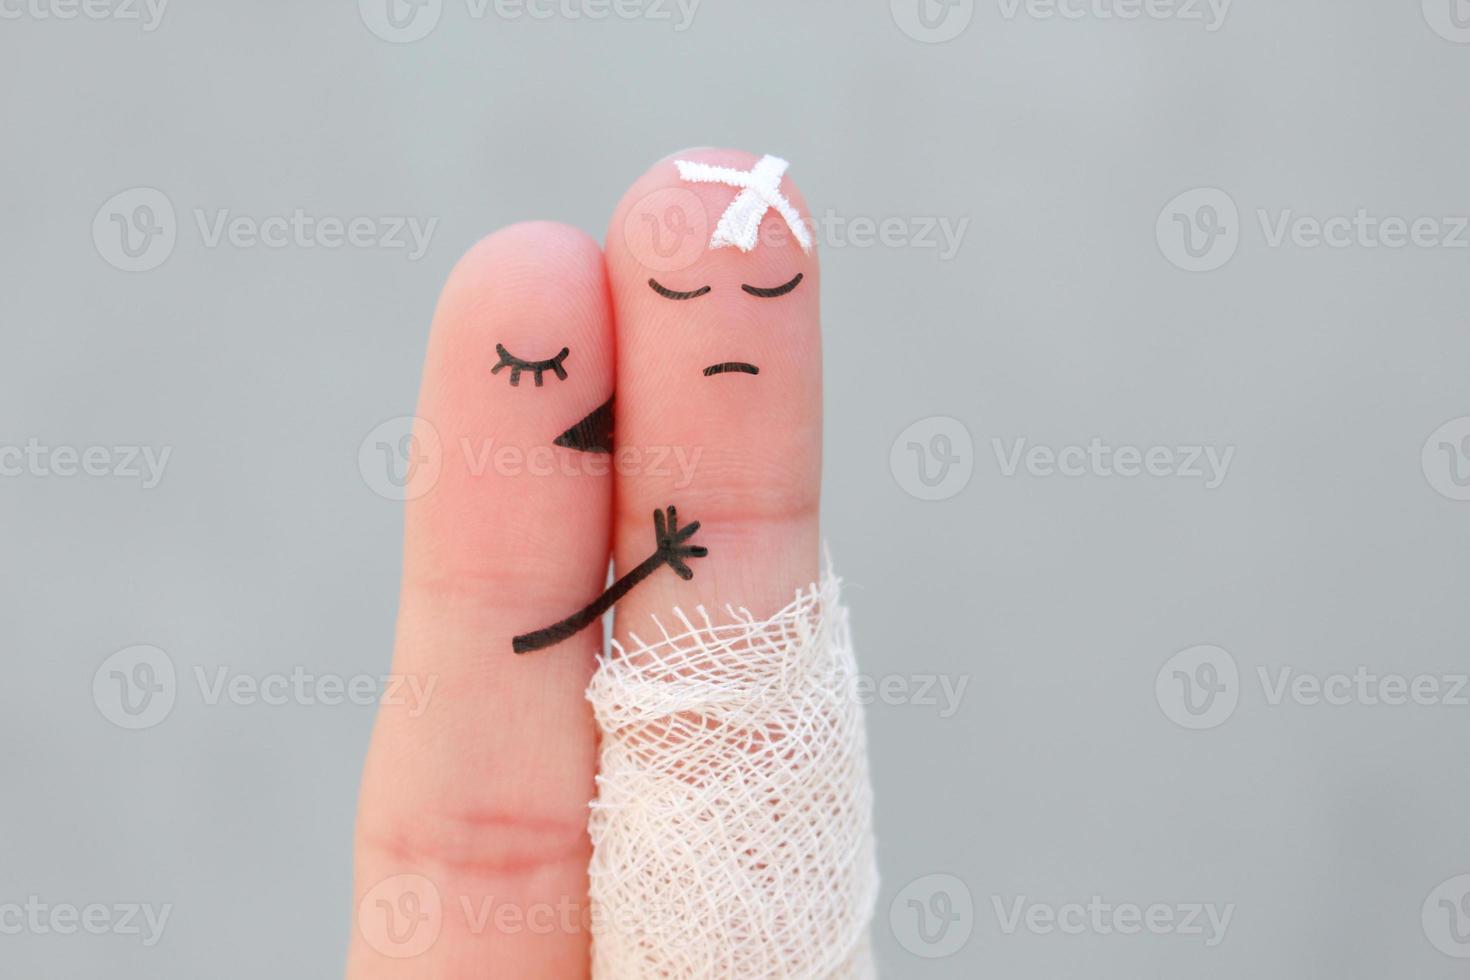 les doigts art de mécontent couple. homme est malade, femme se sent Pardon pour lui. elle baisers et câlins son. photo